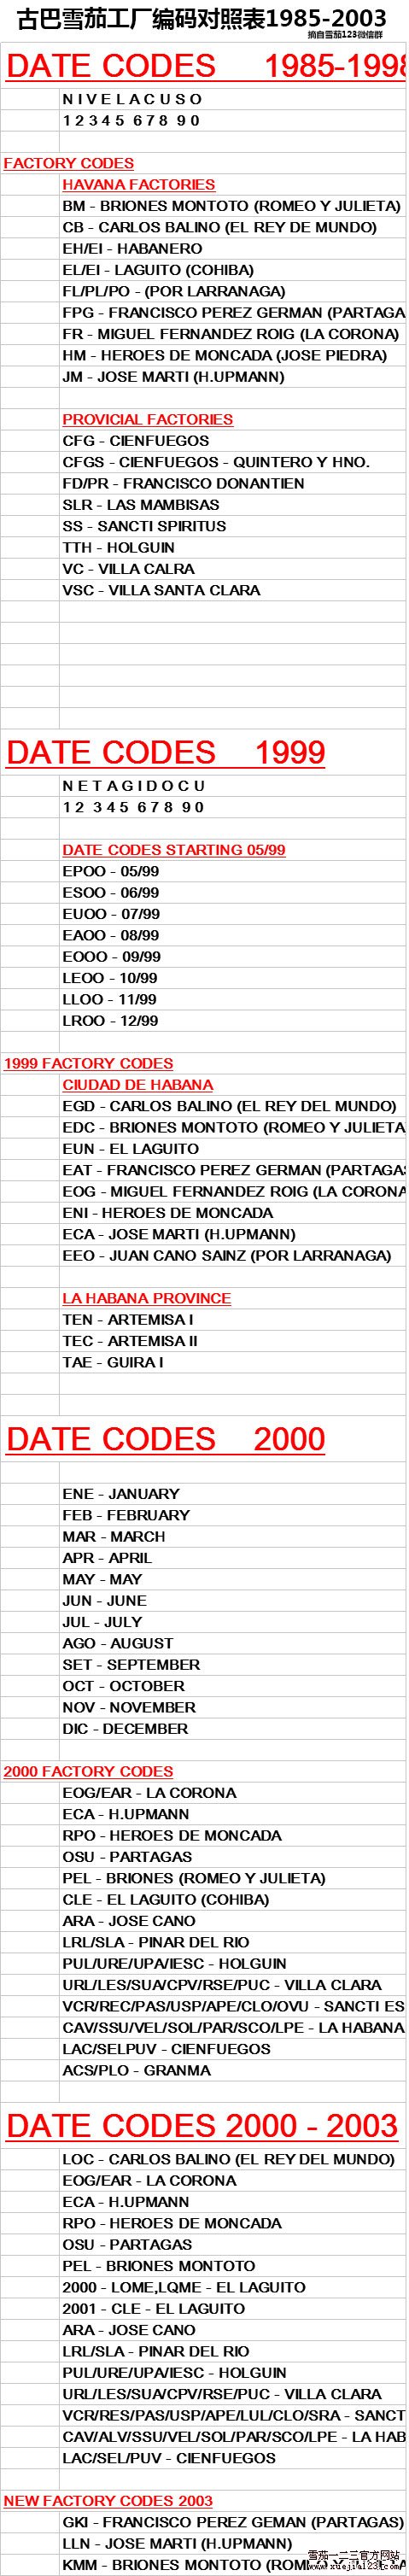 古巴雪茄工厂编码对照表1985-2003